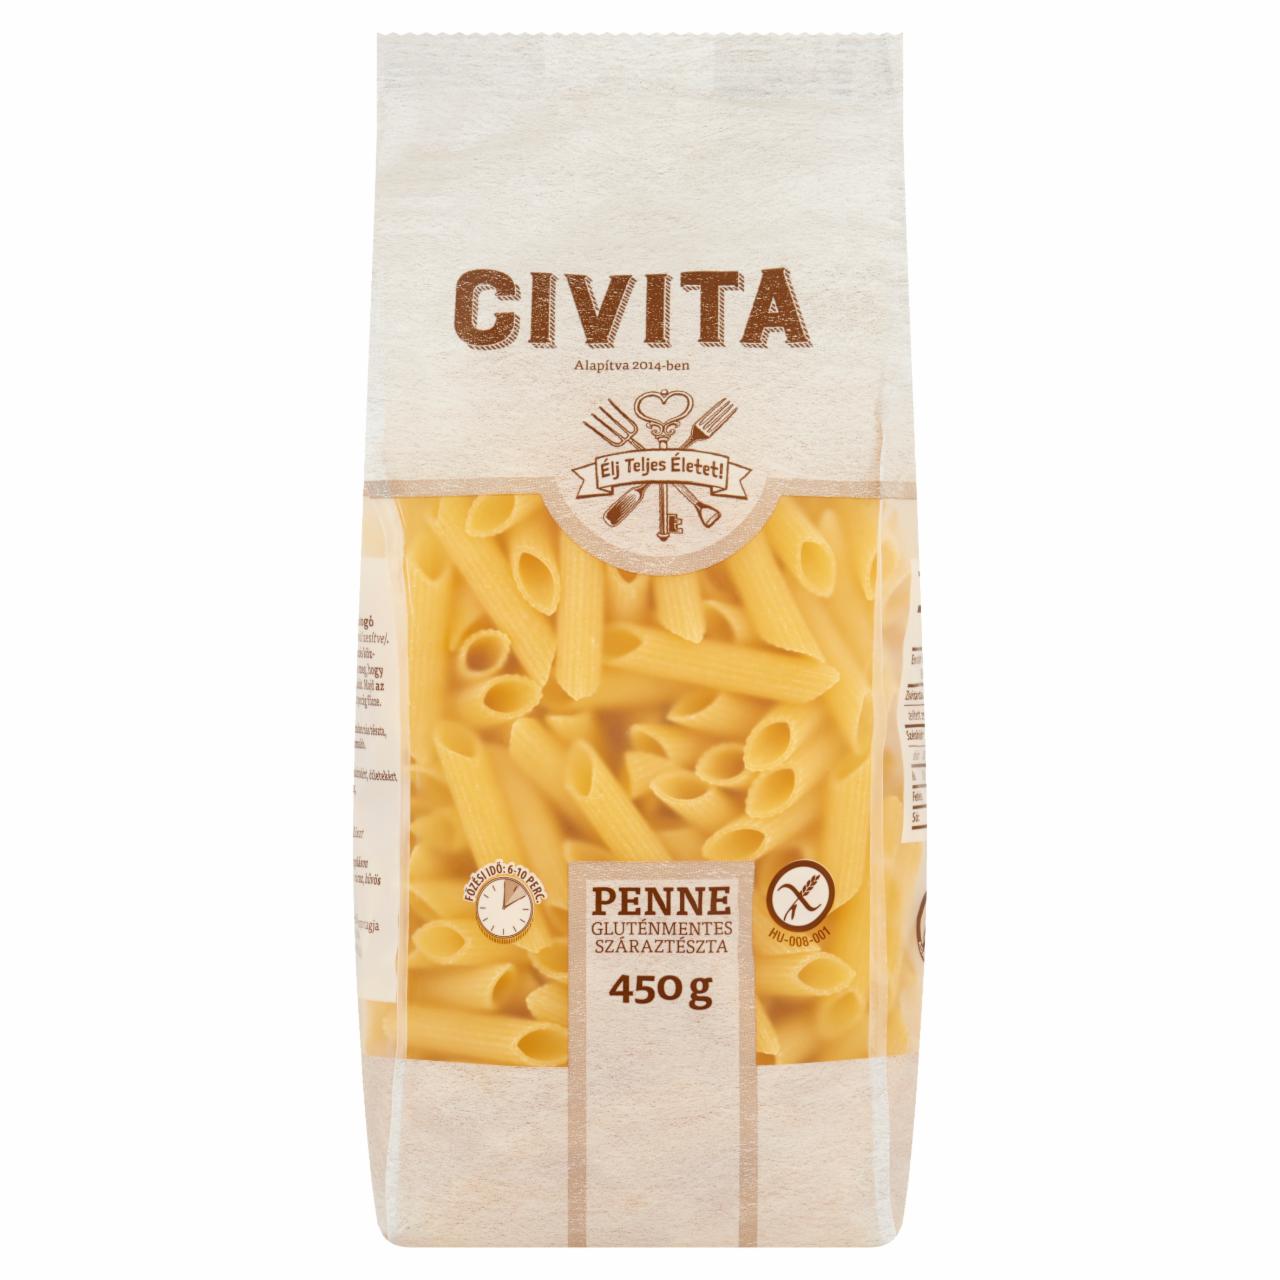 Képek - Civita penne gluténmentes száraztészta 450 g